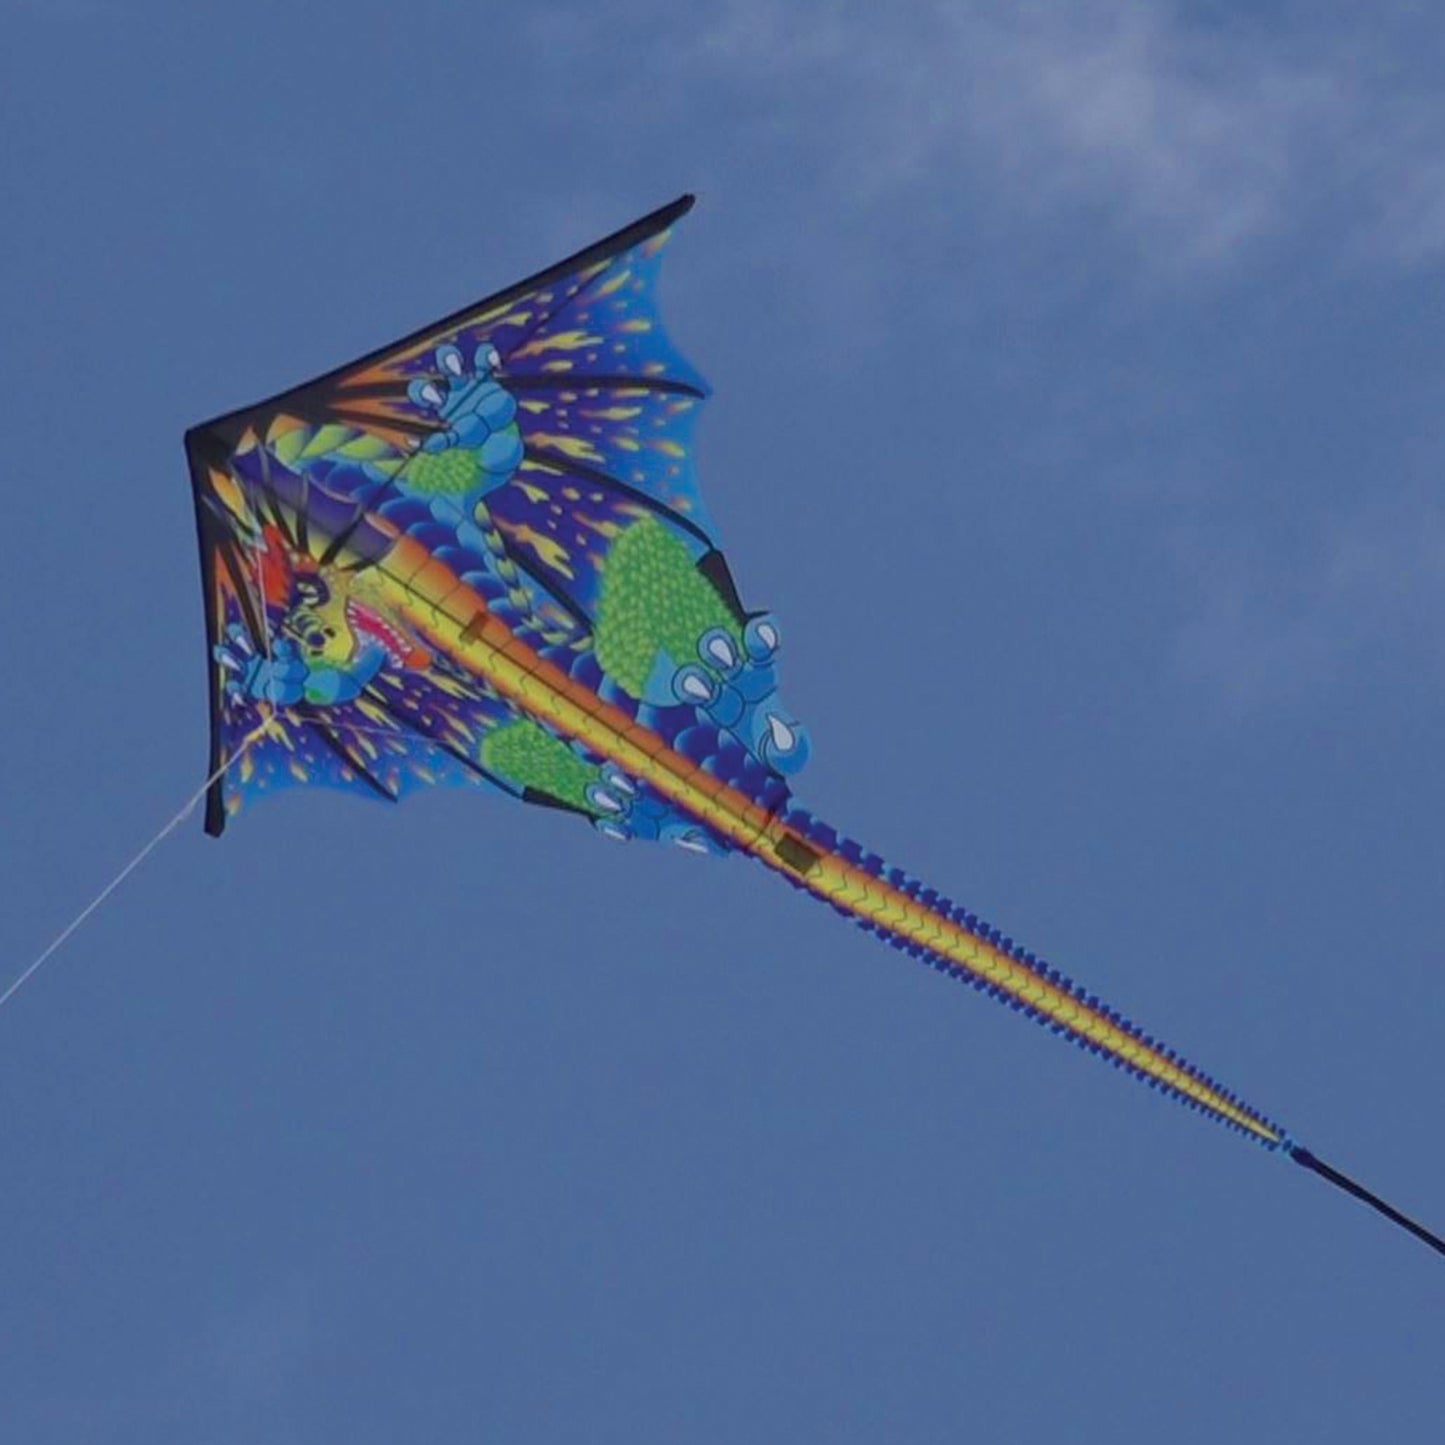 X Kites DLX Diamond Dragon Nylon Kite photo of product in use